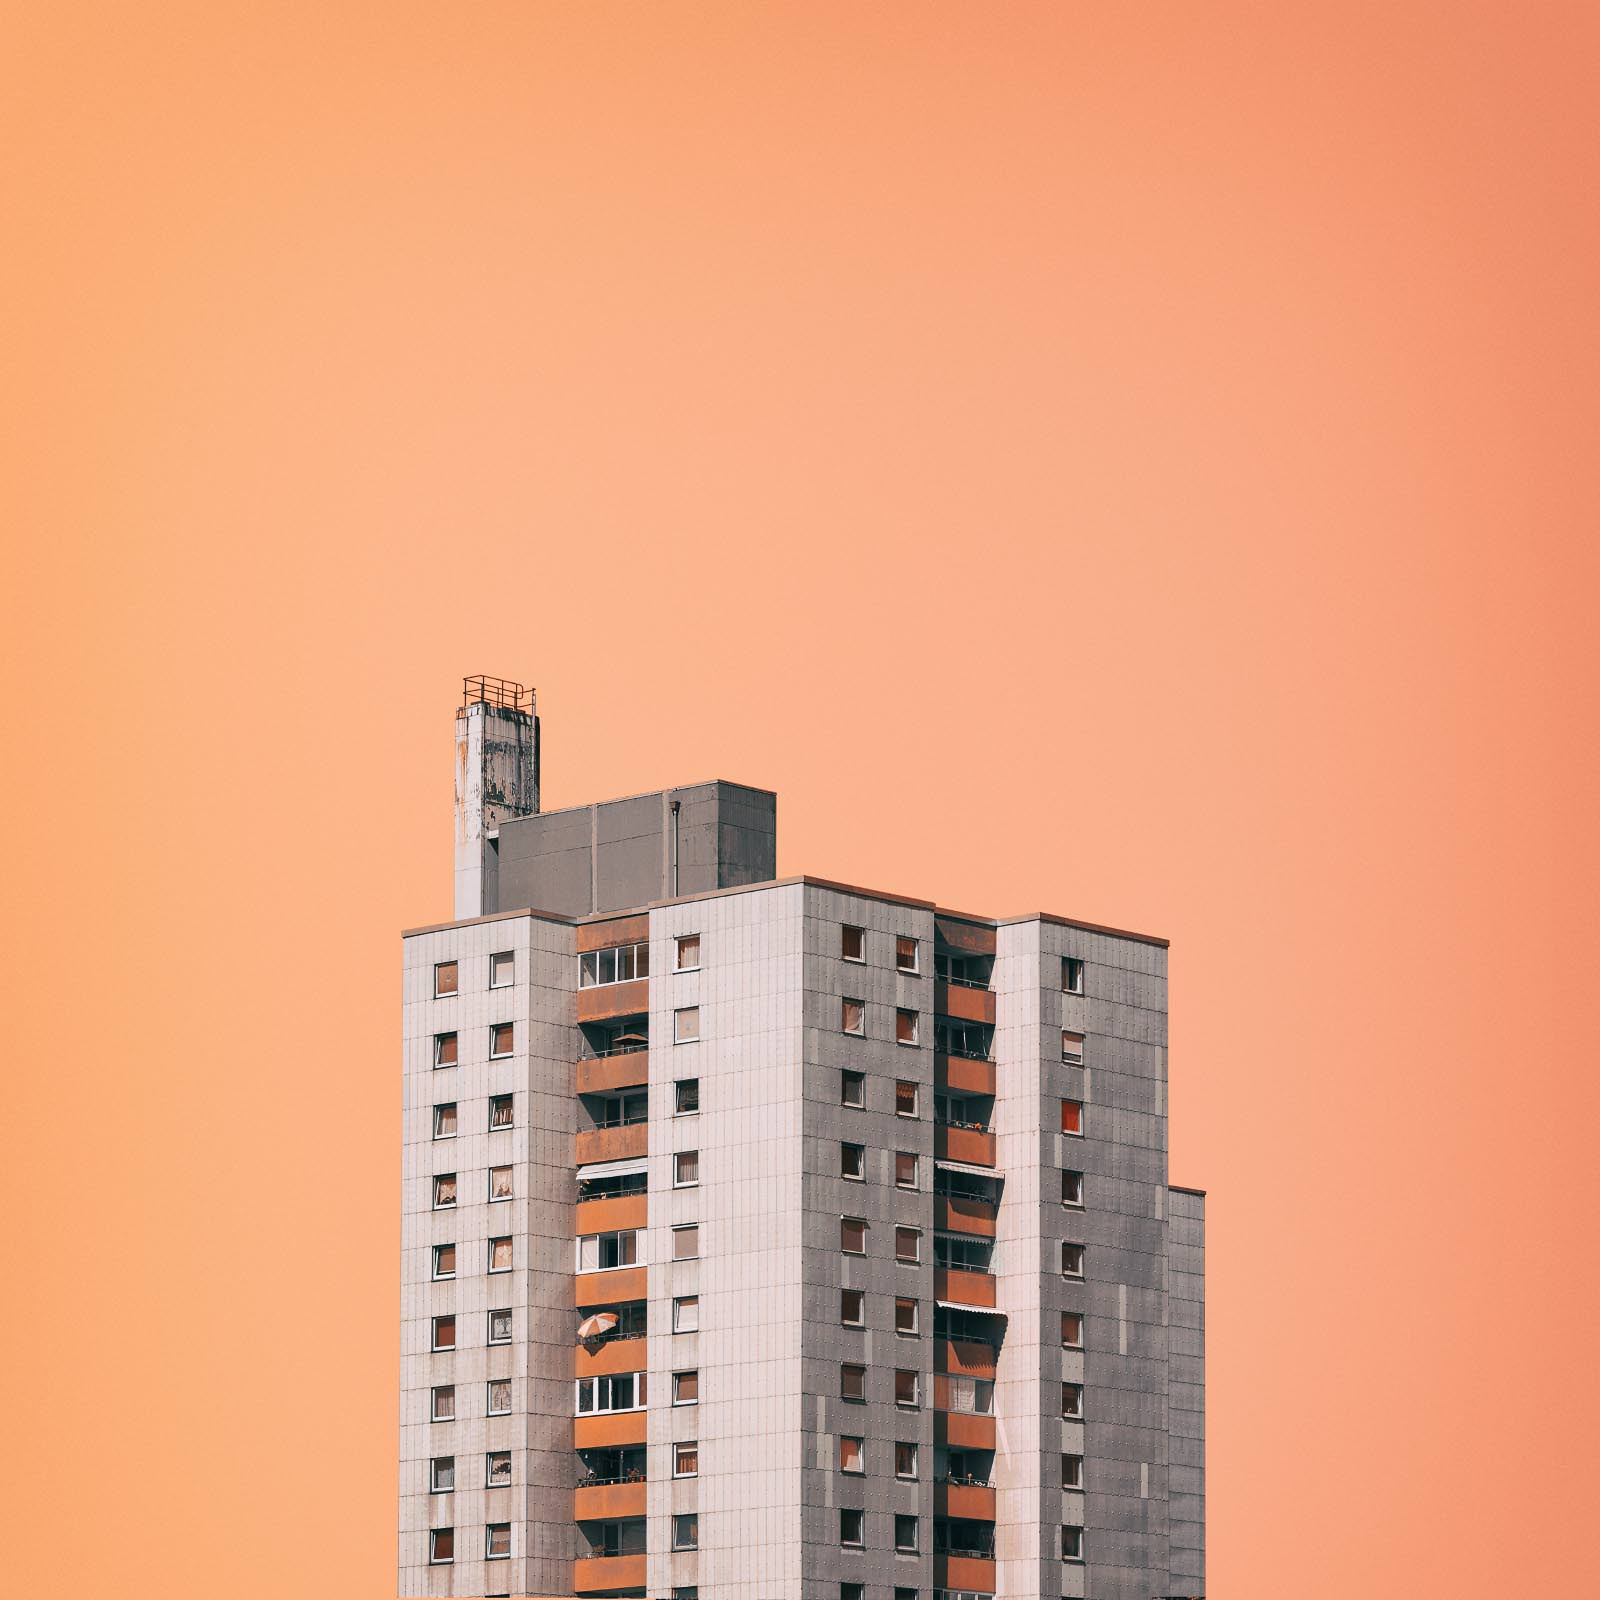 Wohnhaus vor Orangenem Hintergrund